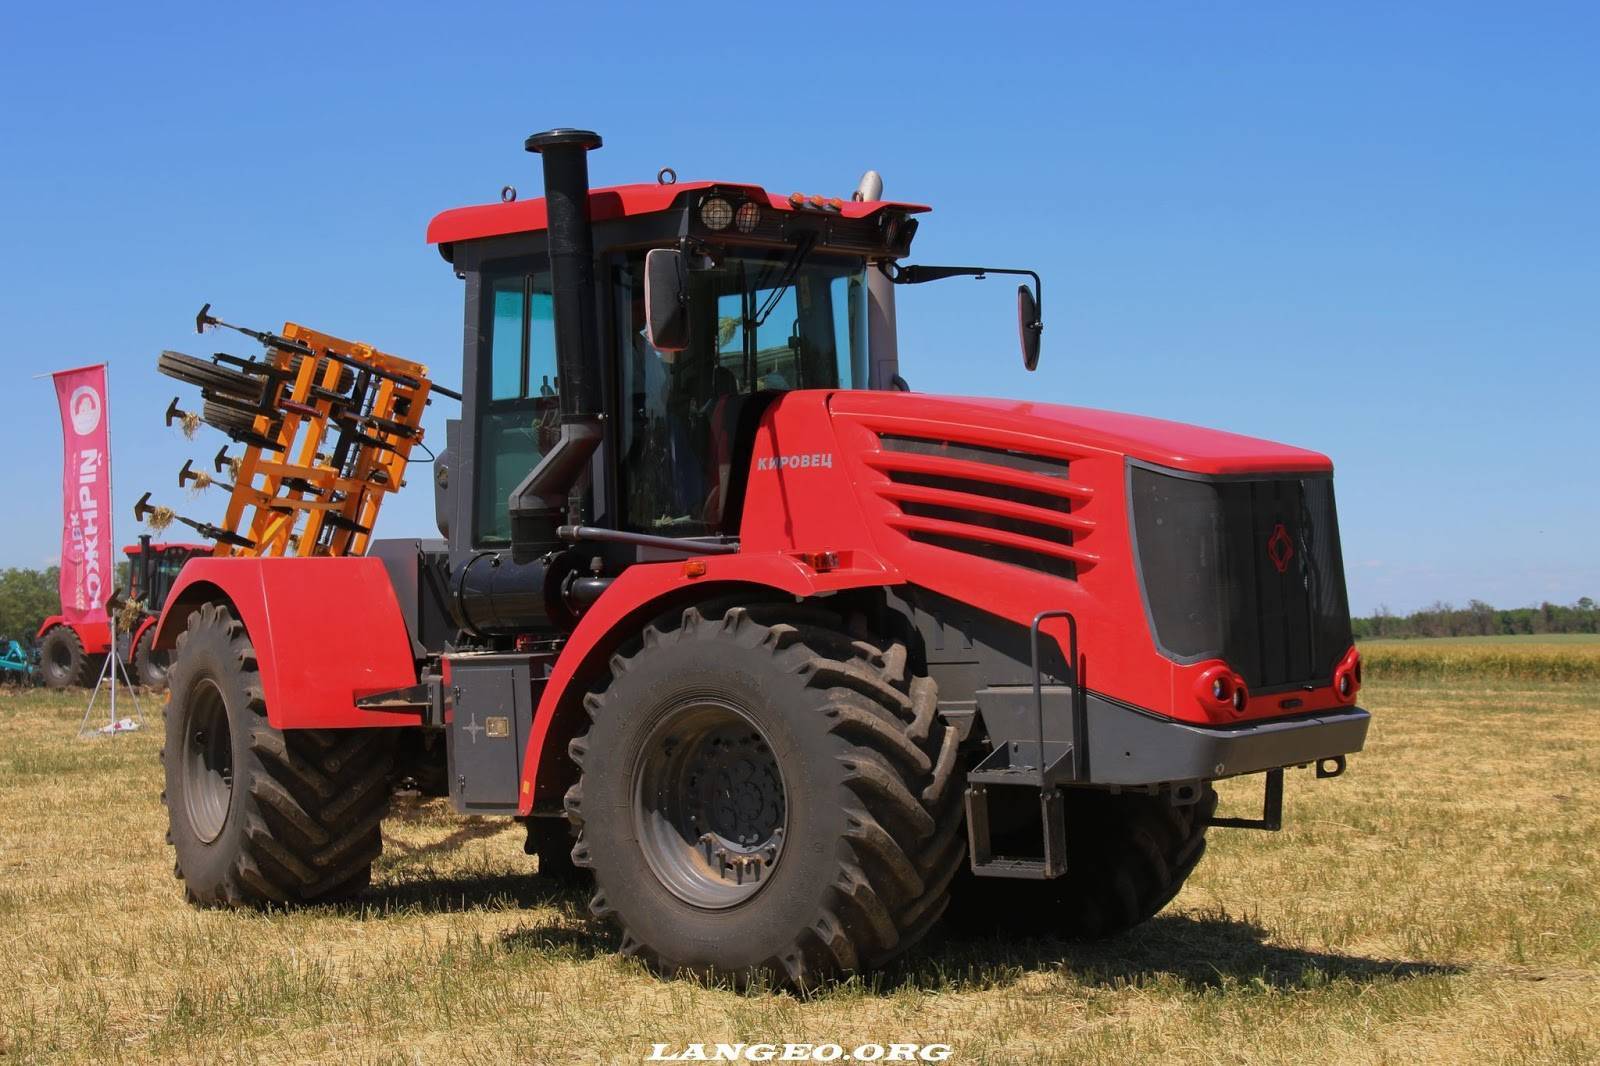 Трактор кировец к-701 технические характеристики и габаритные размеры, двигатель и коробка передач, а так же устройство